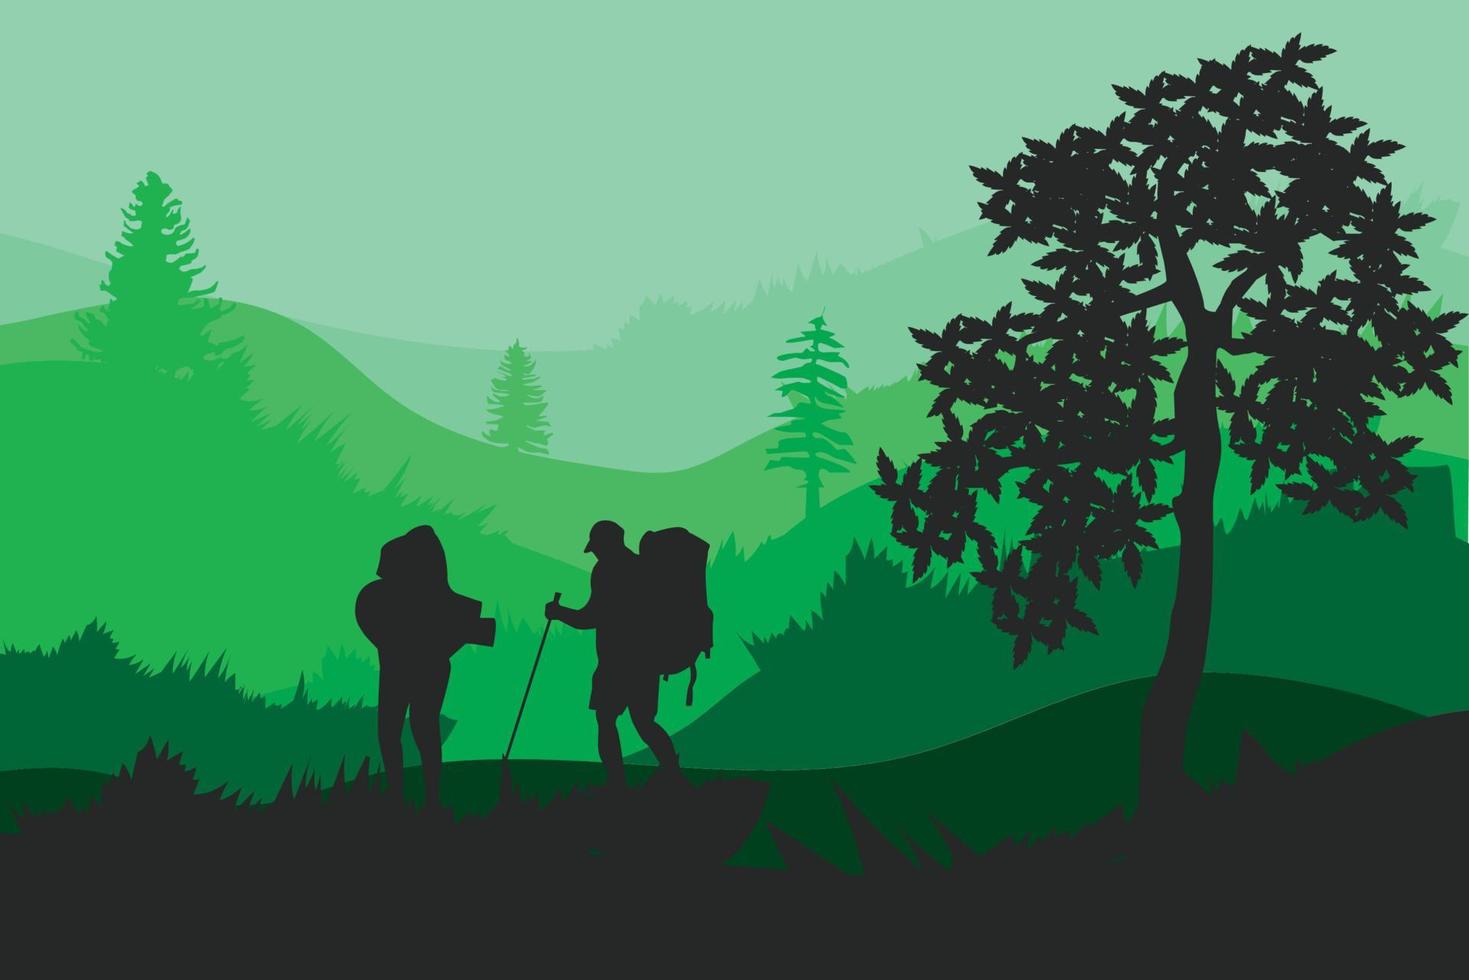 1 randonneur d'équipe, randonneur, touristes debout dans un paysage de montagne avec forêt sous ciel coucher de soleil, avec nuages et oiseaux volants, arbre vecteur